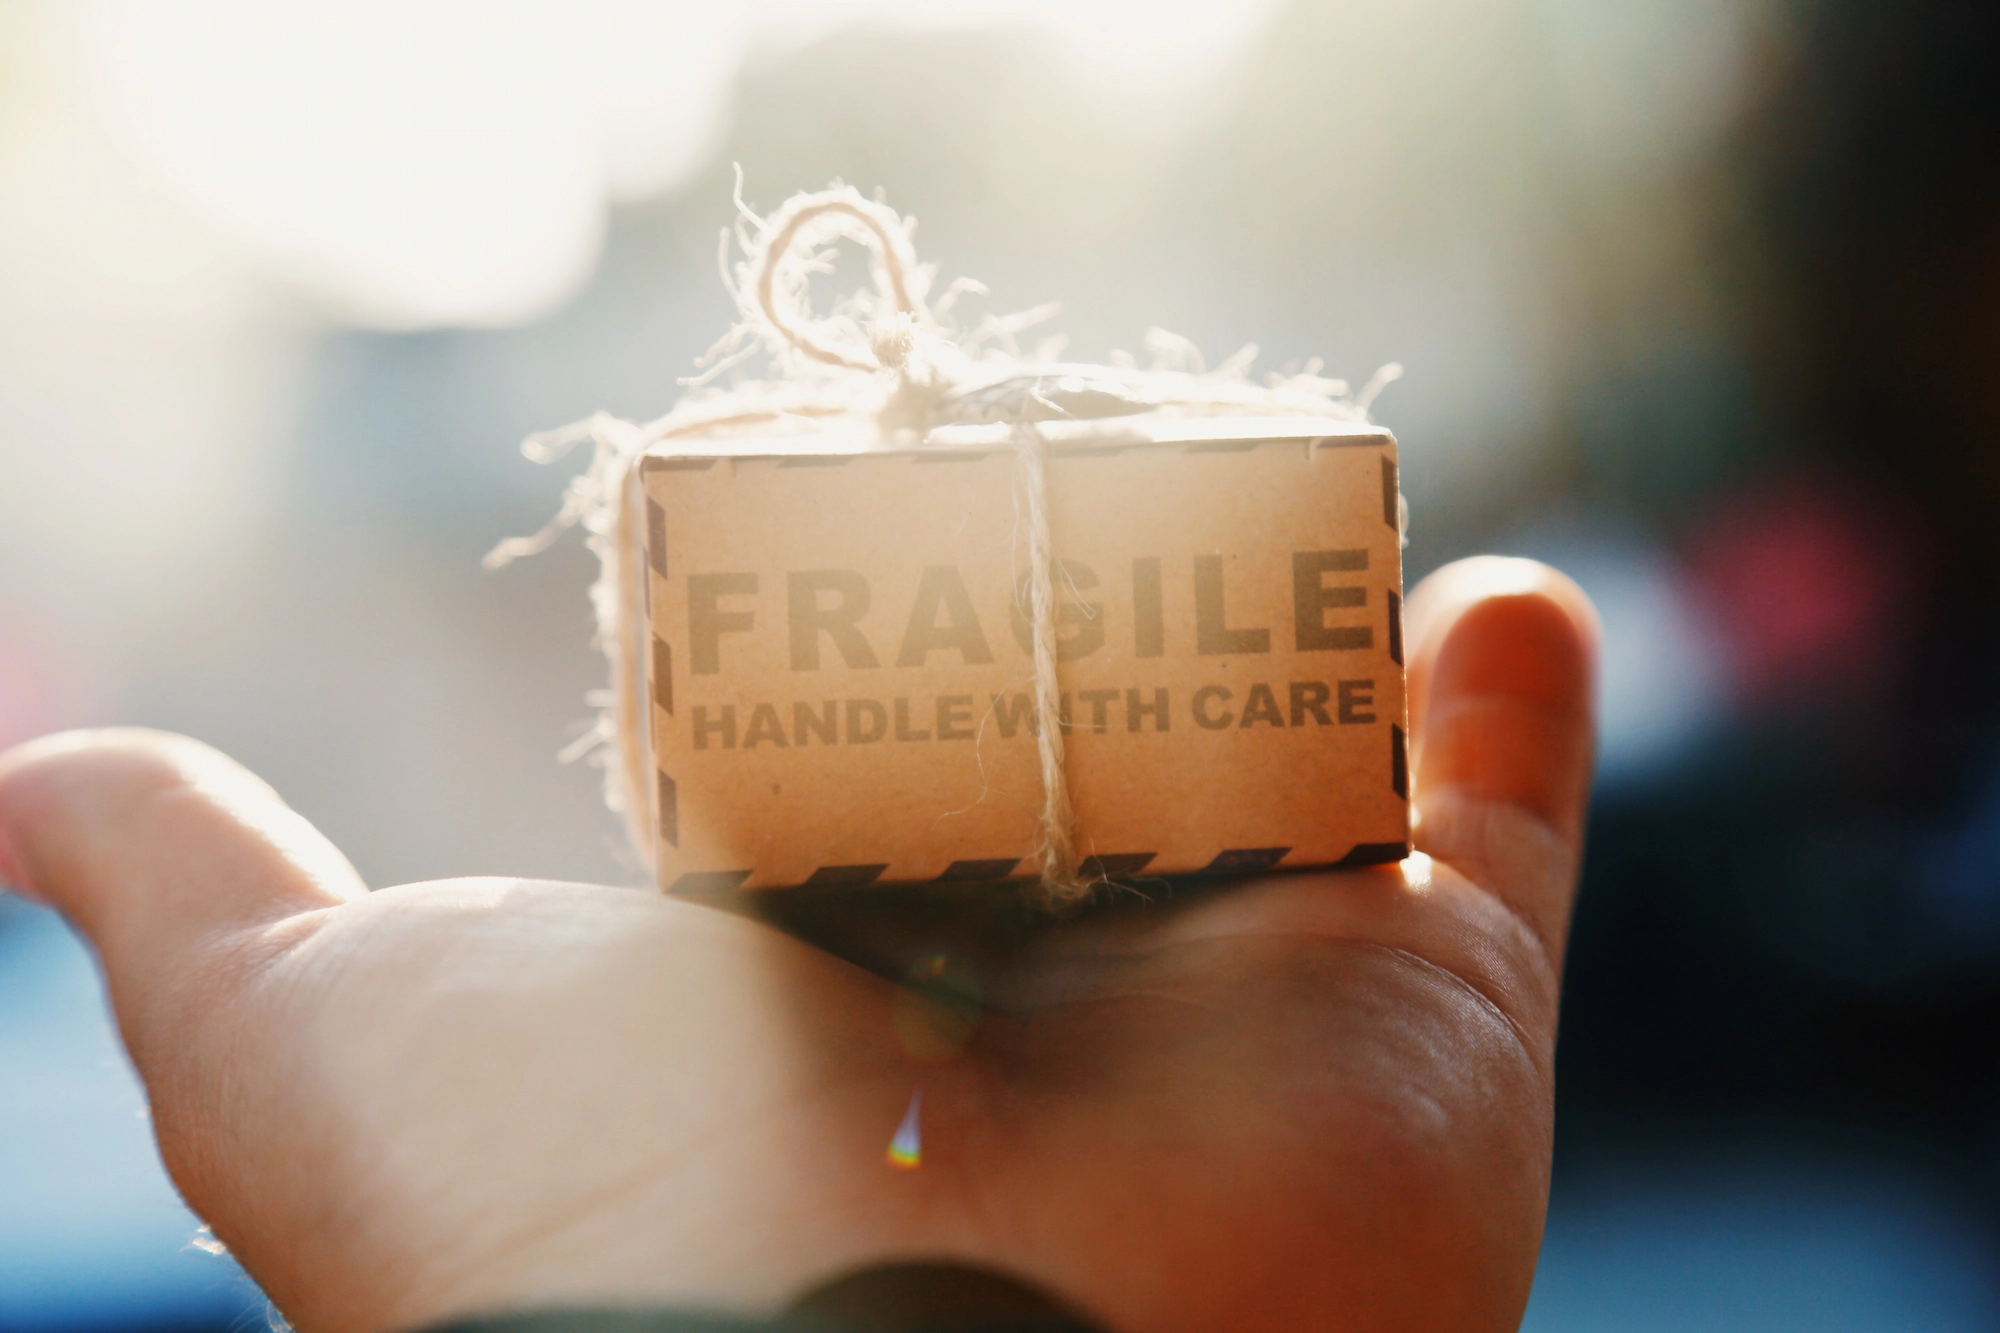 En inslagen låda med texten "Fragile, Handle with care"